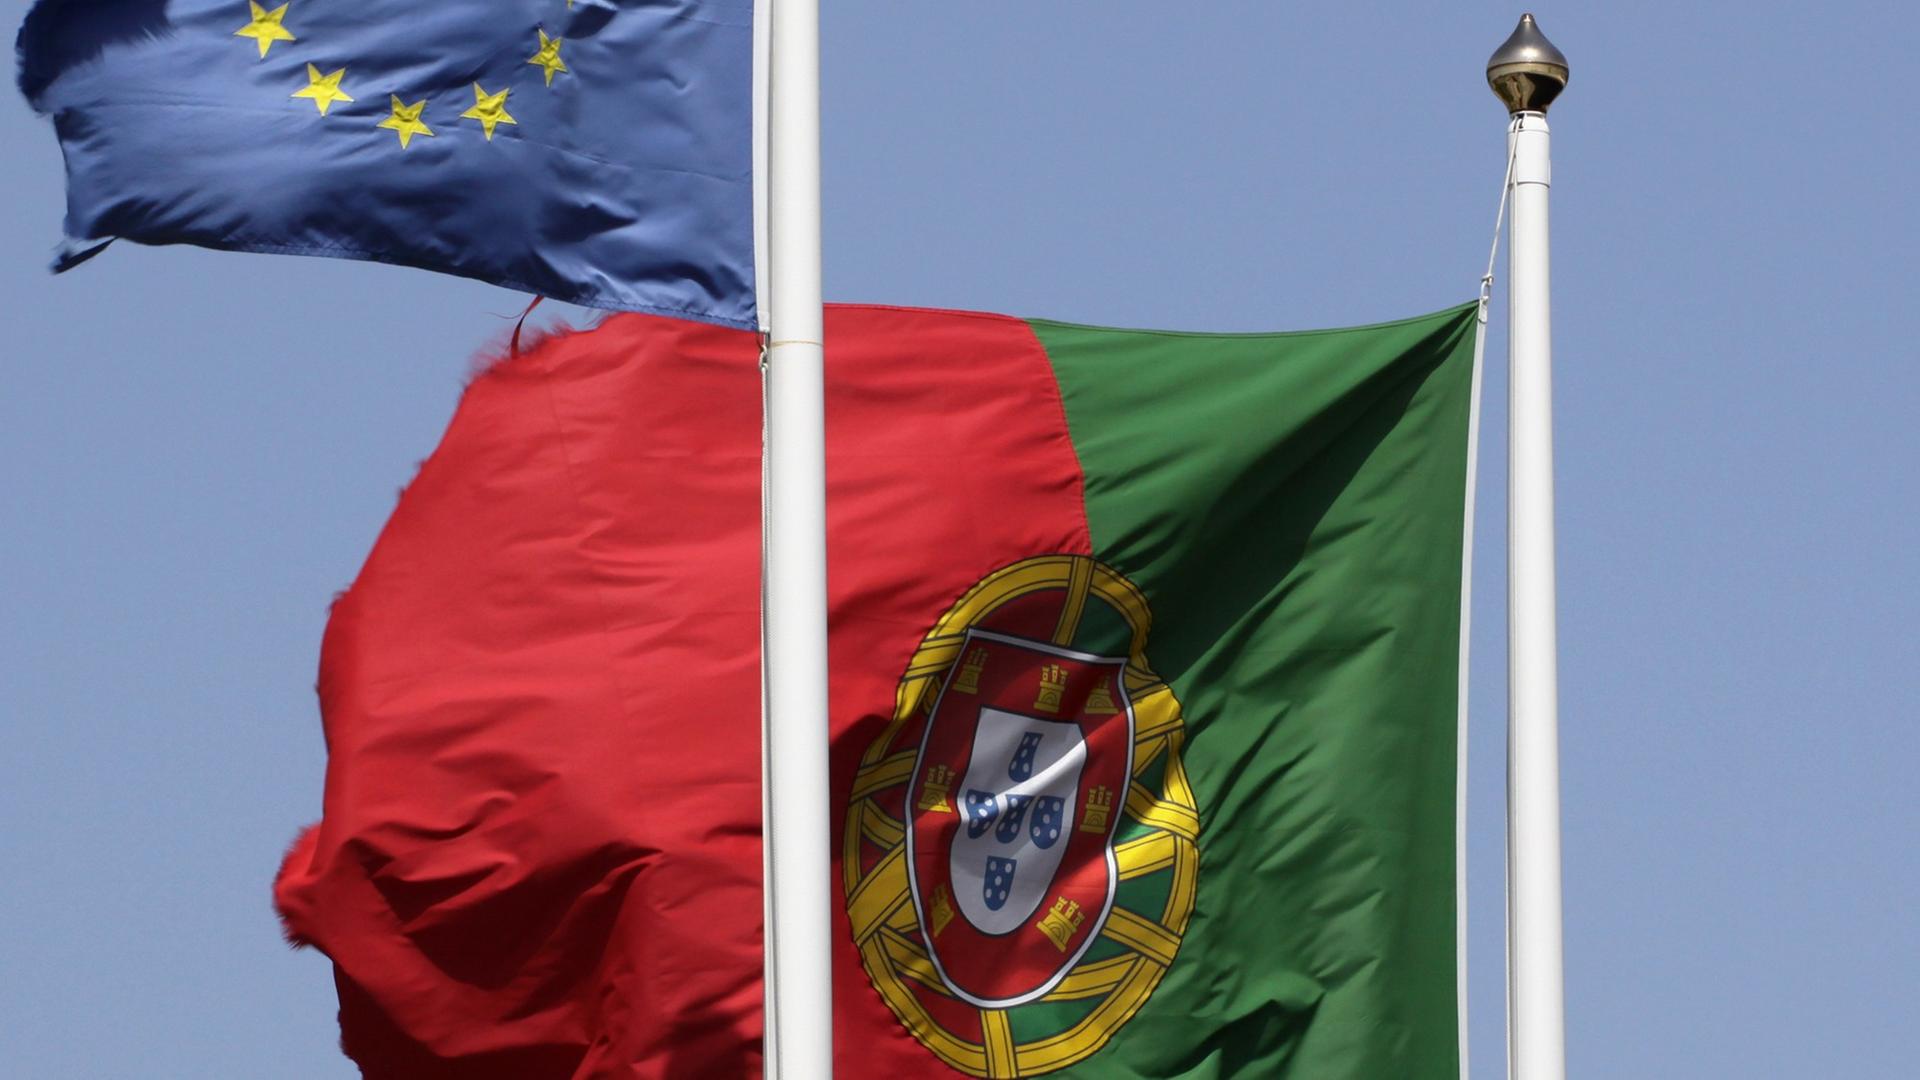 Die Flaggen Portugals und Europas